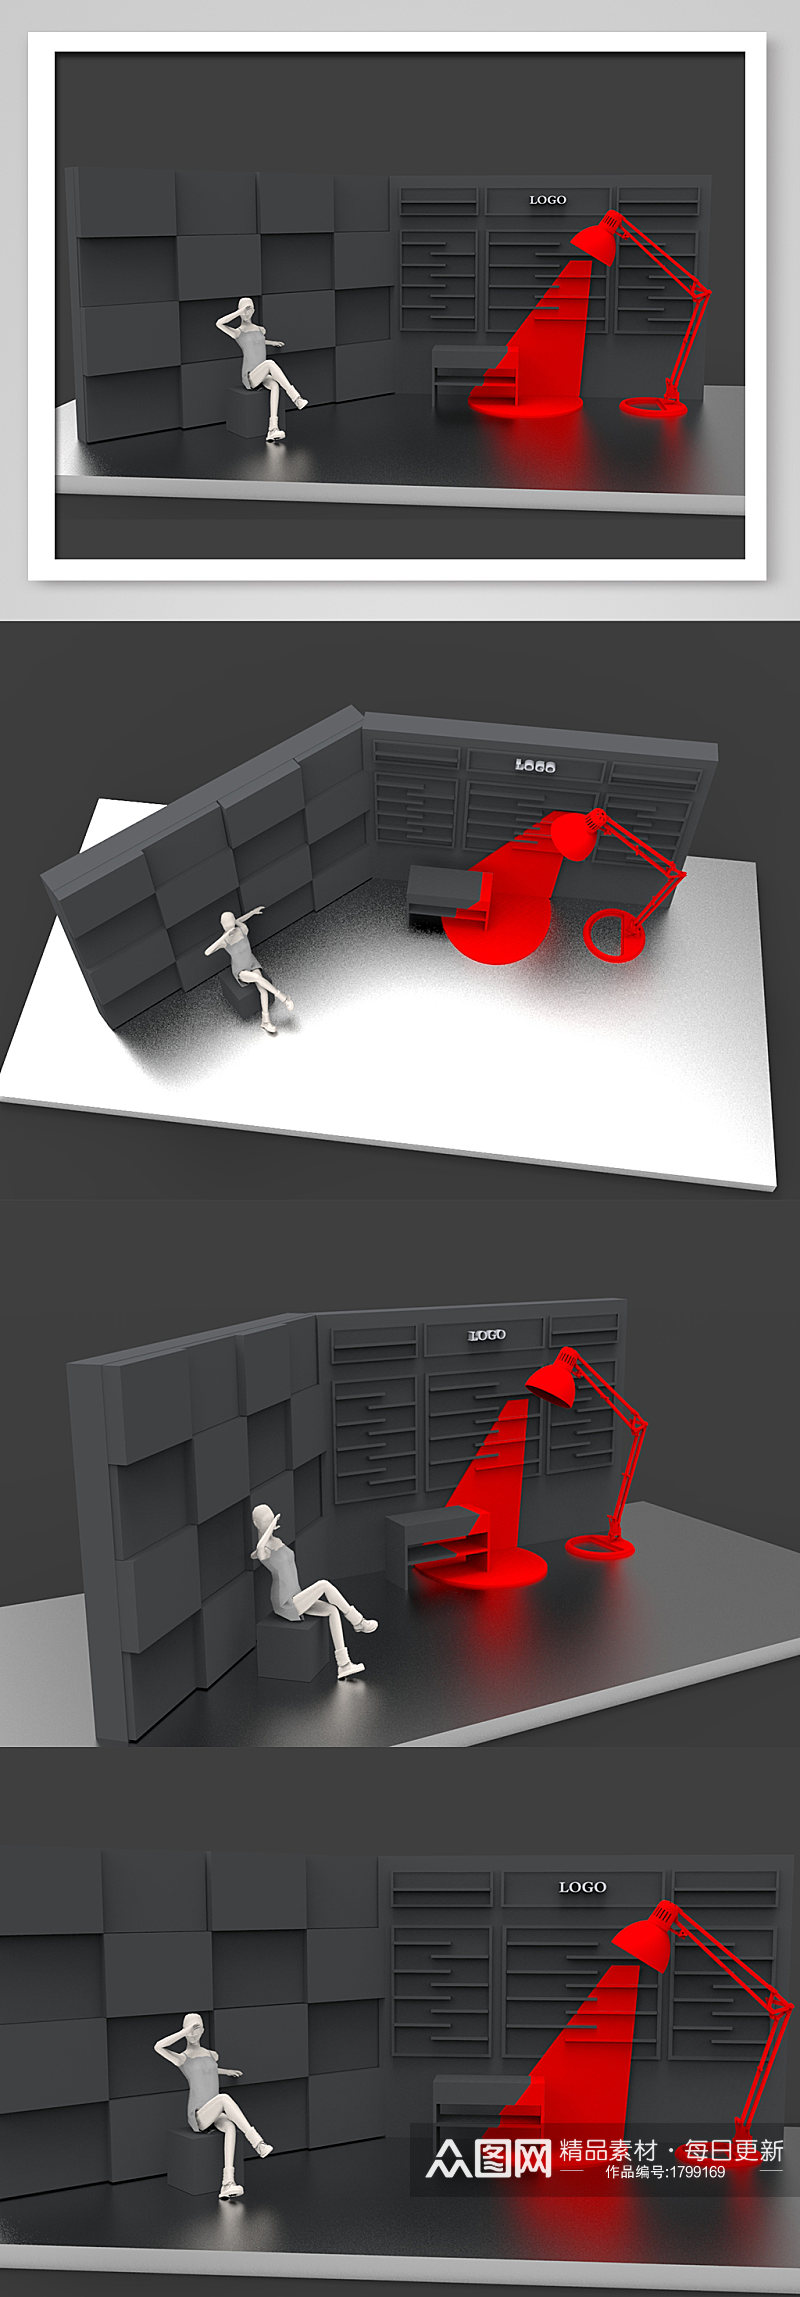 简约大气黑红街拍创意网红墙模型设计素材